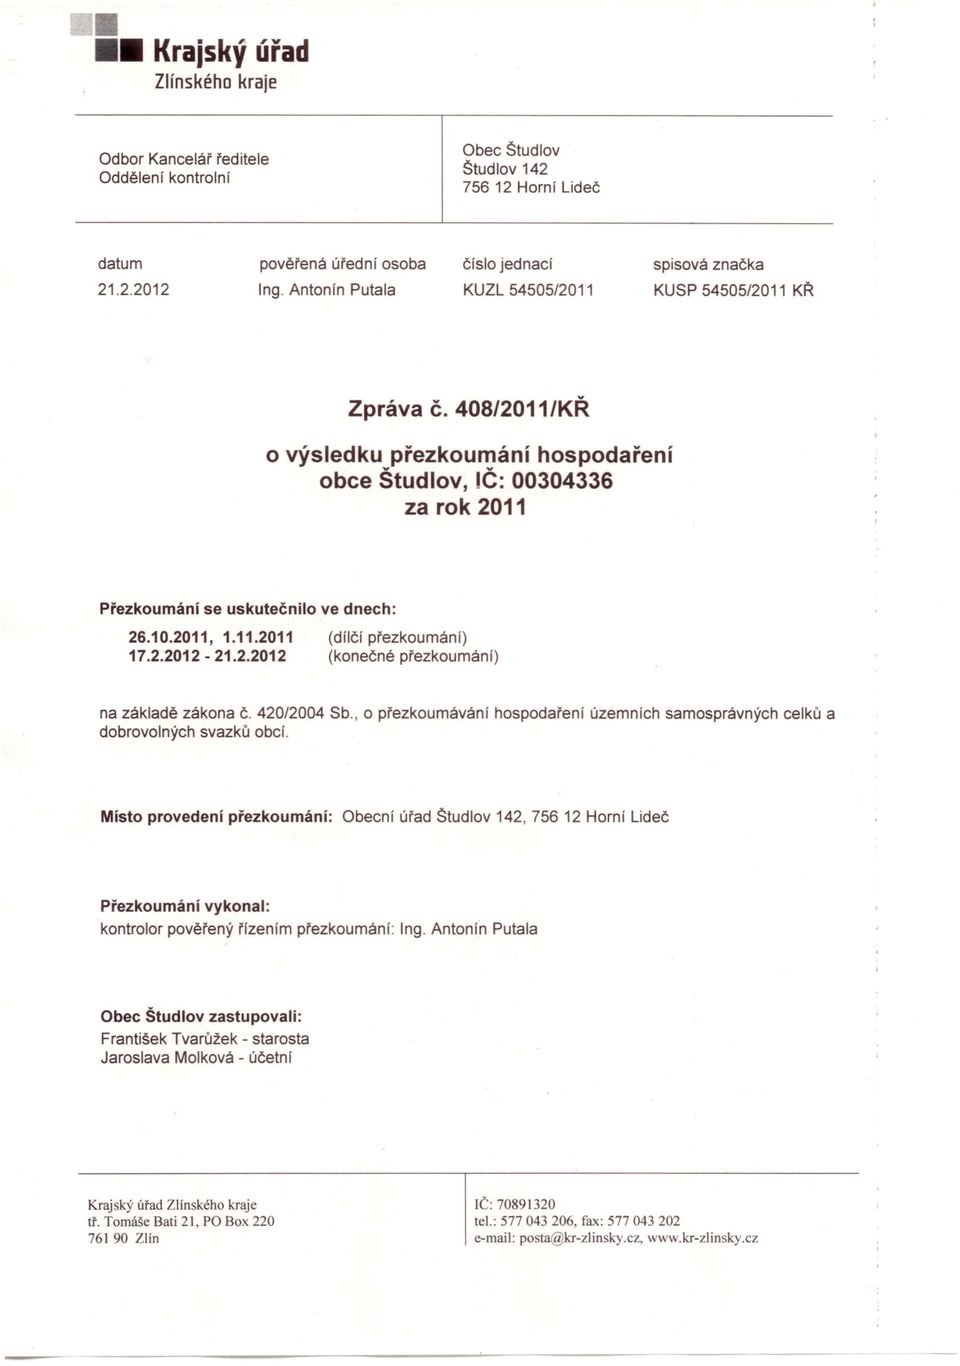 2.2012-21.2.2012 (dílčí přezkoumání) (konečné přezkoumání) na základě zákona Č. 420/2004 Sb., o přezkoumávání hospodaření územních samosprávných celků a dobrovolných svazků obcí.